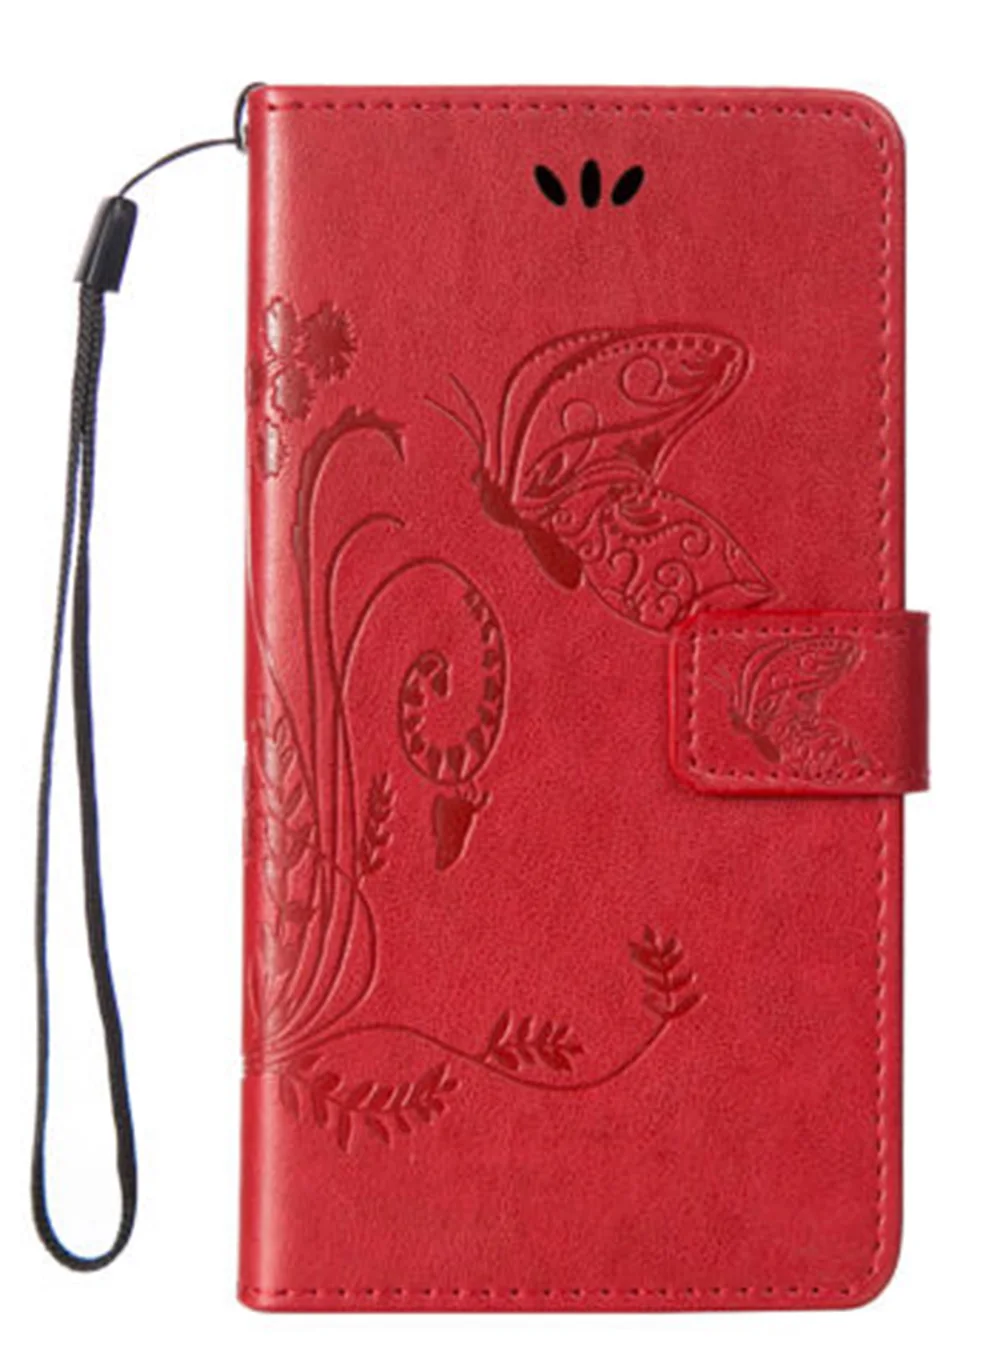 Чехол с бабочкой для Prestigio Muze X5 LTE B3 B5 B7 C5 C7 G3 H3 J3 A5 A7, высококачественный кожаный защитный флип-чехол для мобильного телефона - Цвет: Red